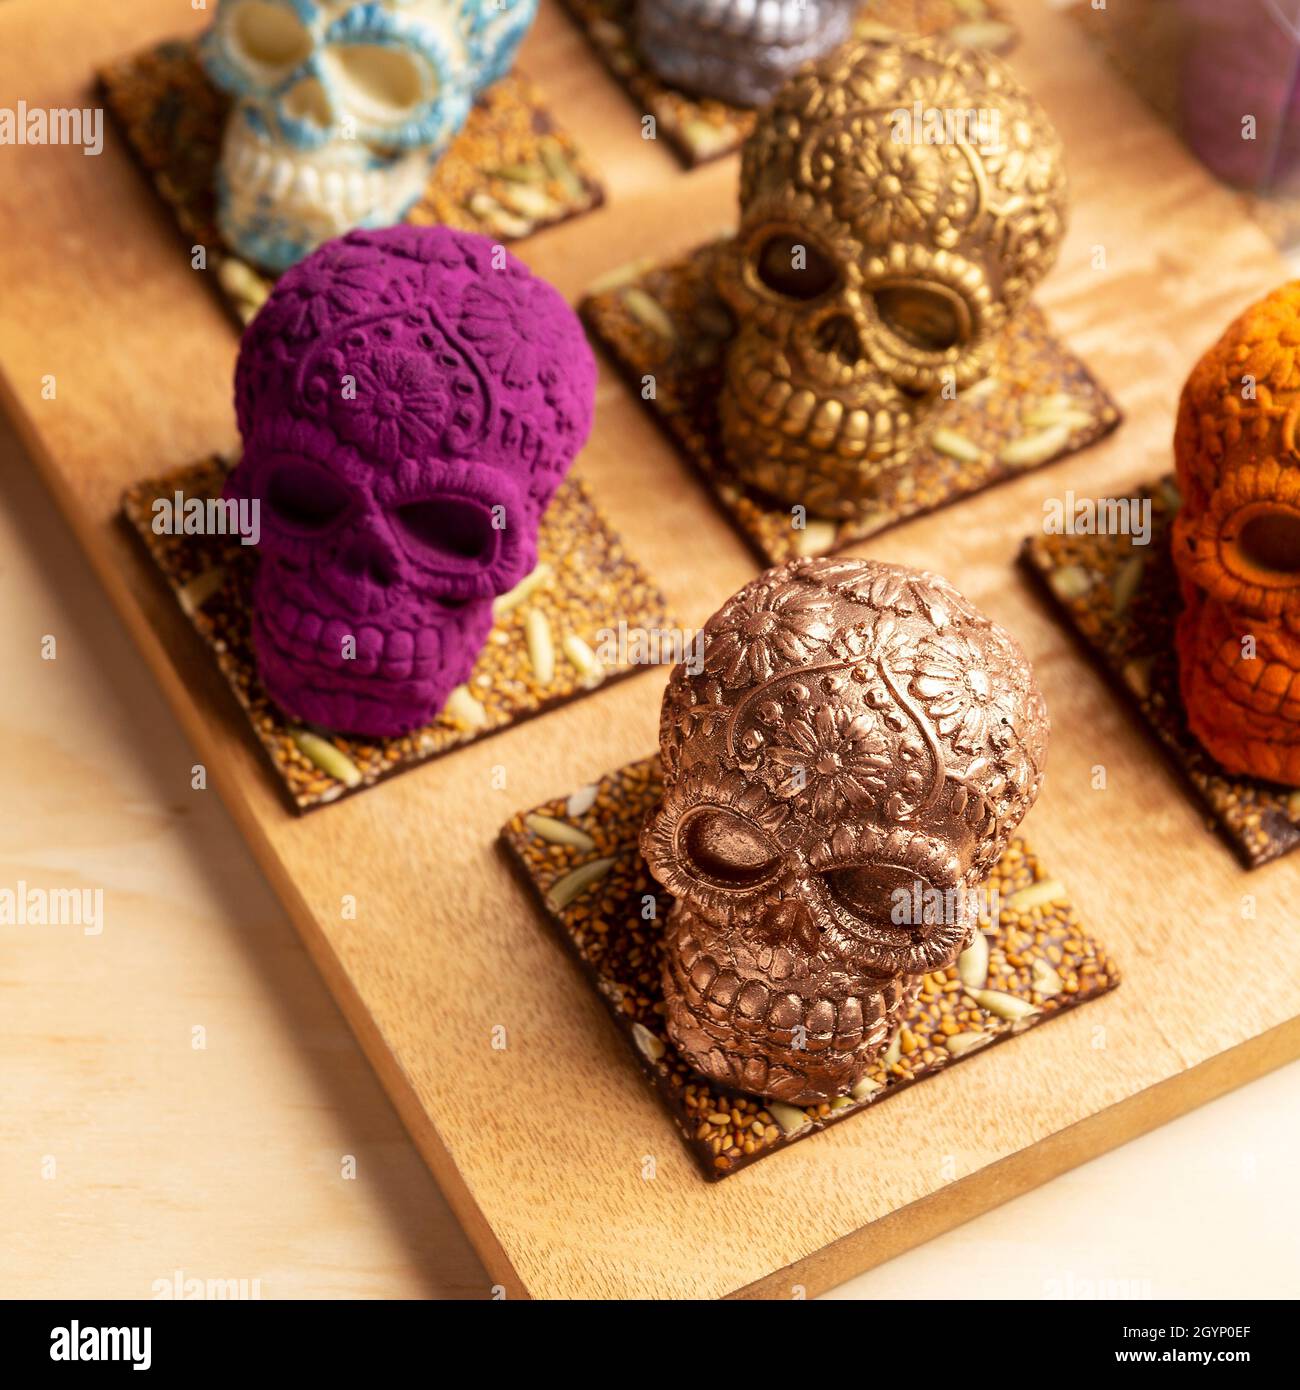 Cranio messicano ornato commestibile fatto di cioccolato gourmet, regalo tradizionale per 'Dia de muertos' giorno della morte in Messico cultura chiamata 'calaverita Foto Stock